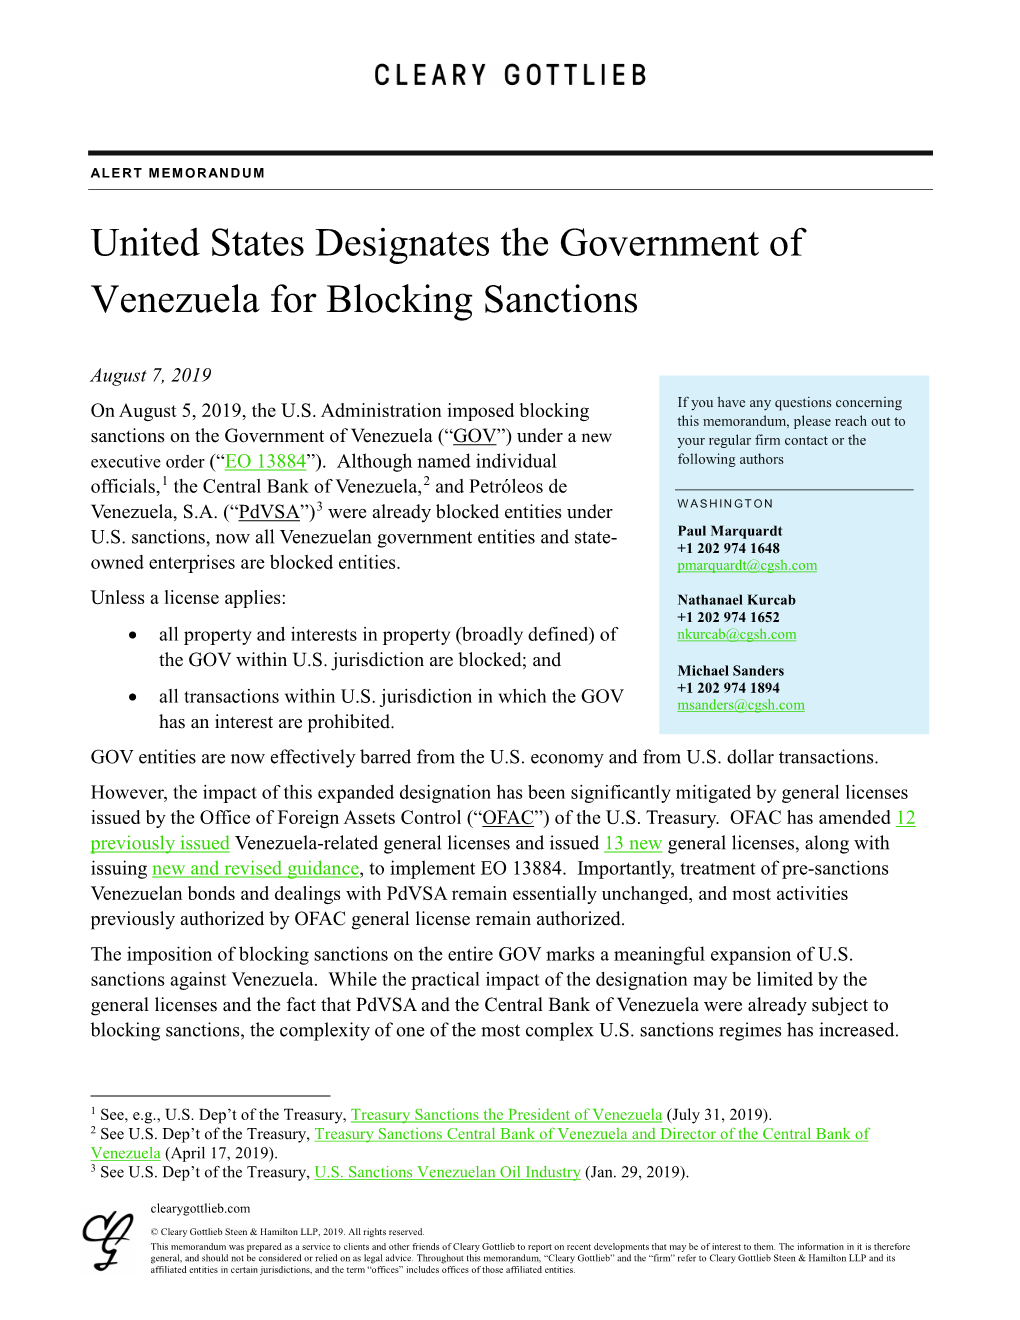 United States Designates the Government of Venezuela for Blocking Sanctions